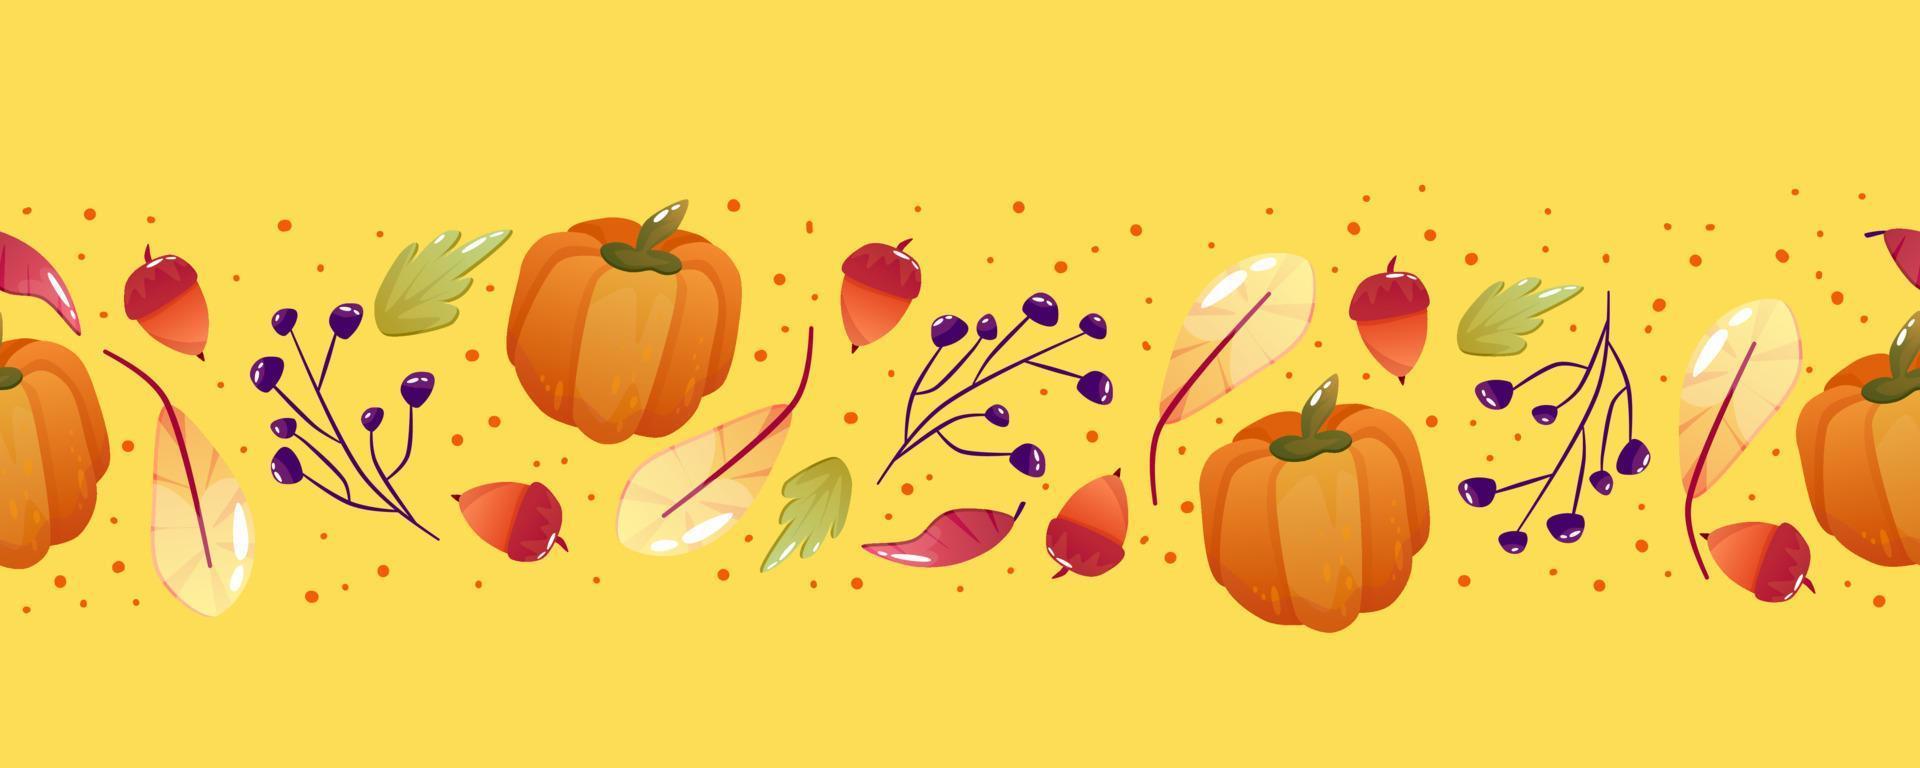 naadloze grens herfst herfst. Thanksgiving feestdag. vector naadloos patroon. helder herfstontwerp met blad, eikel en pompoen.